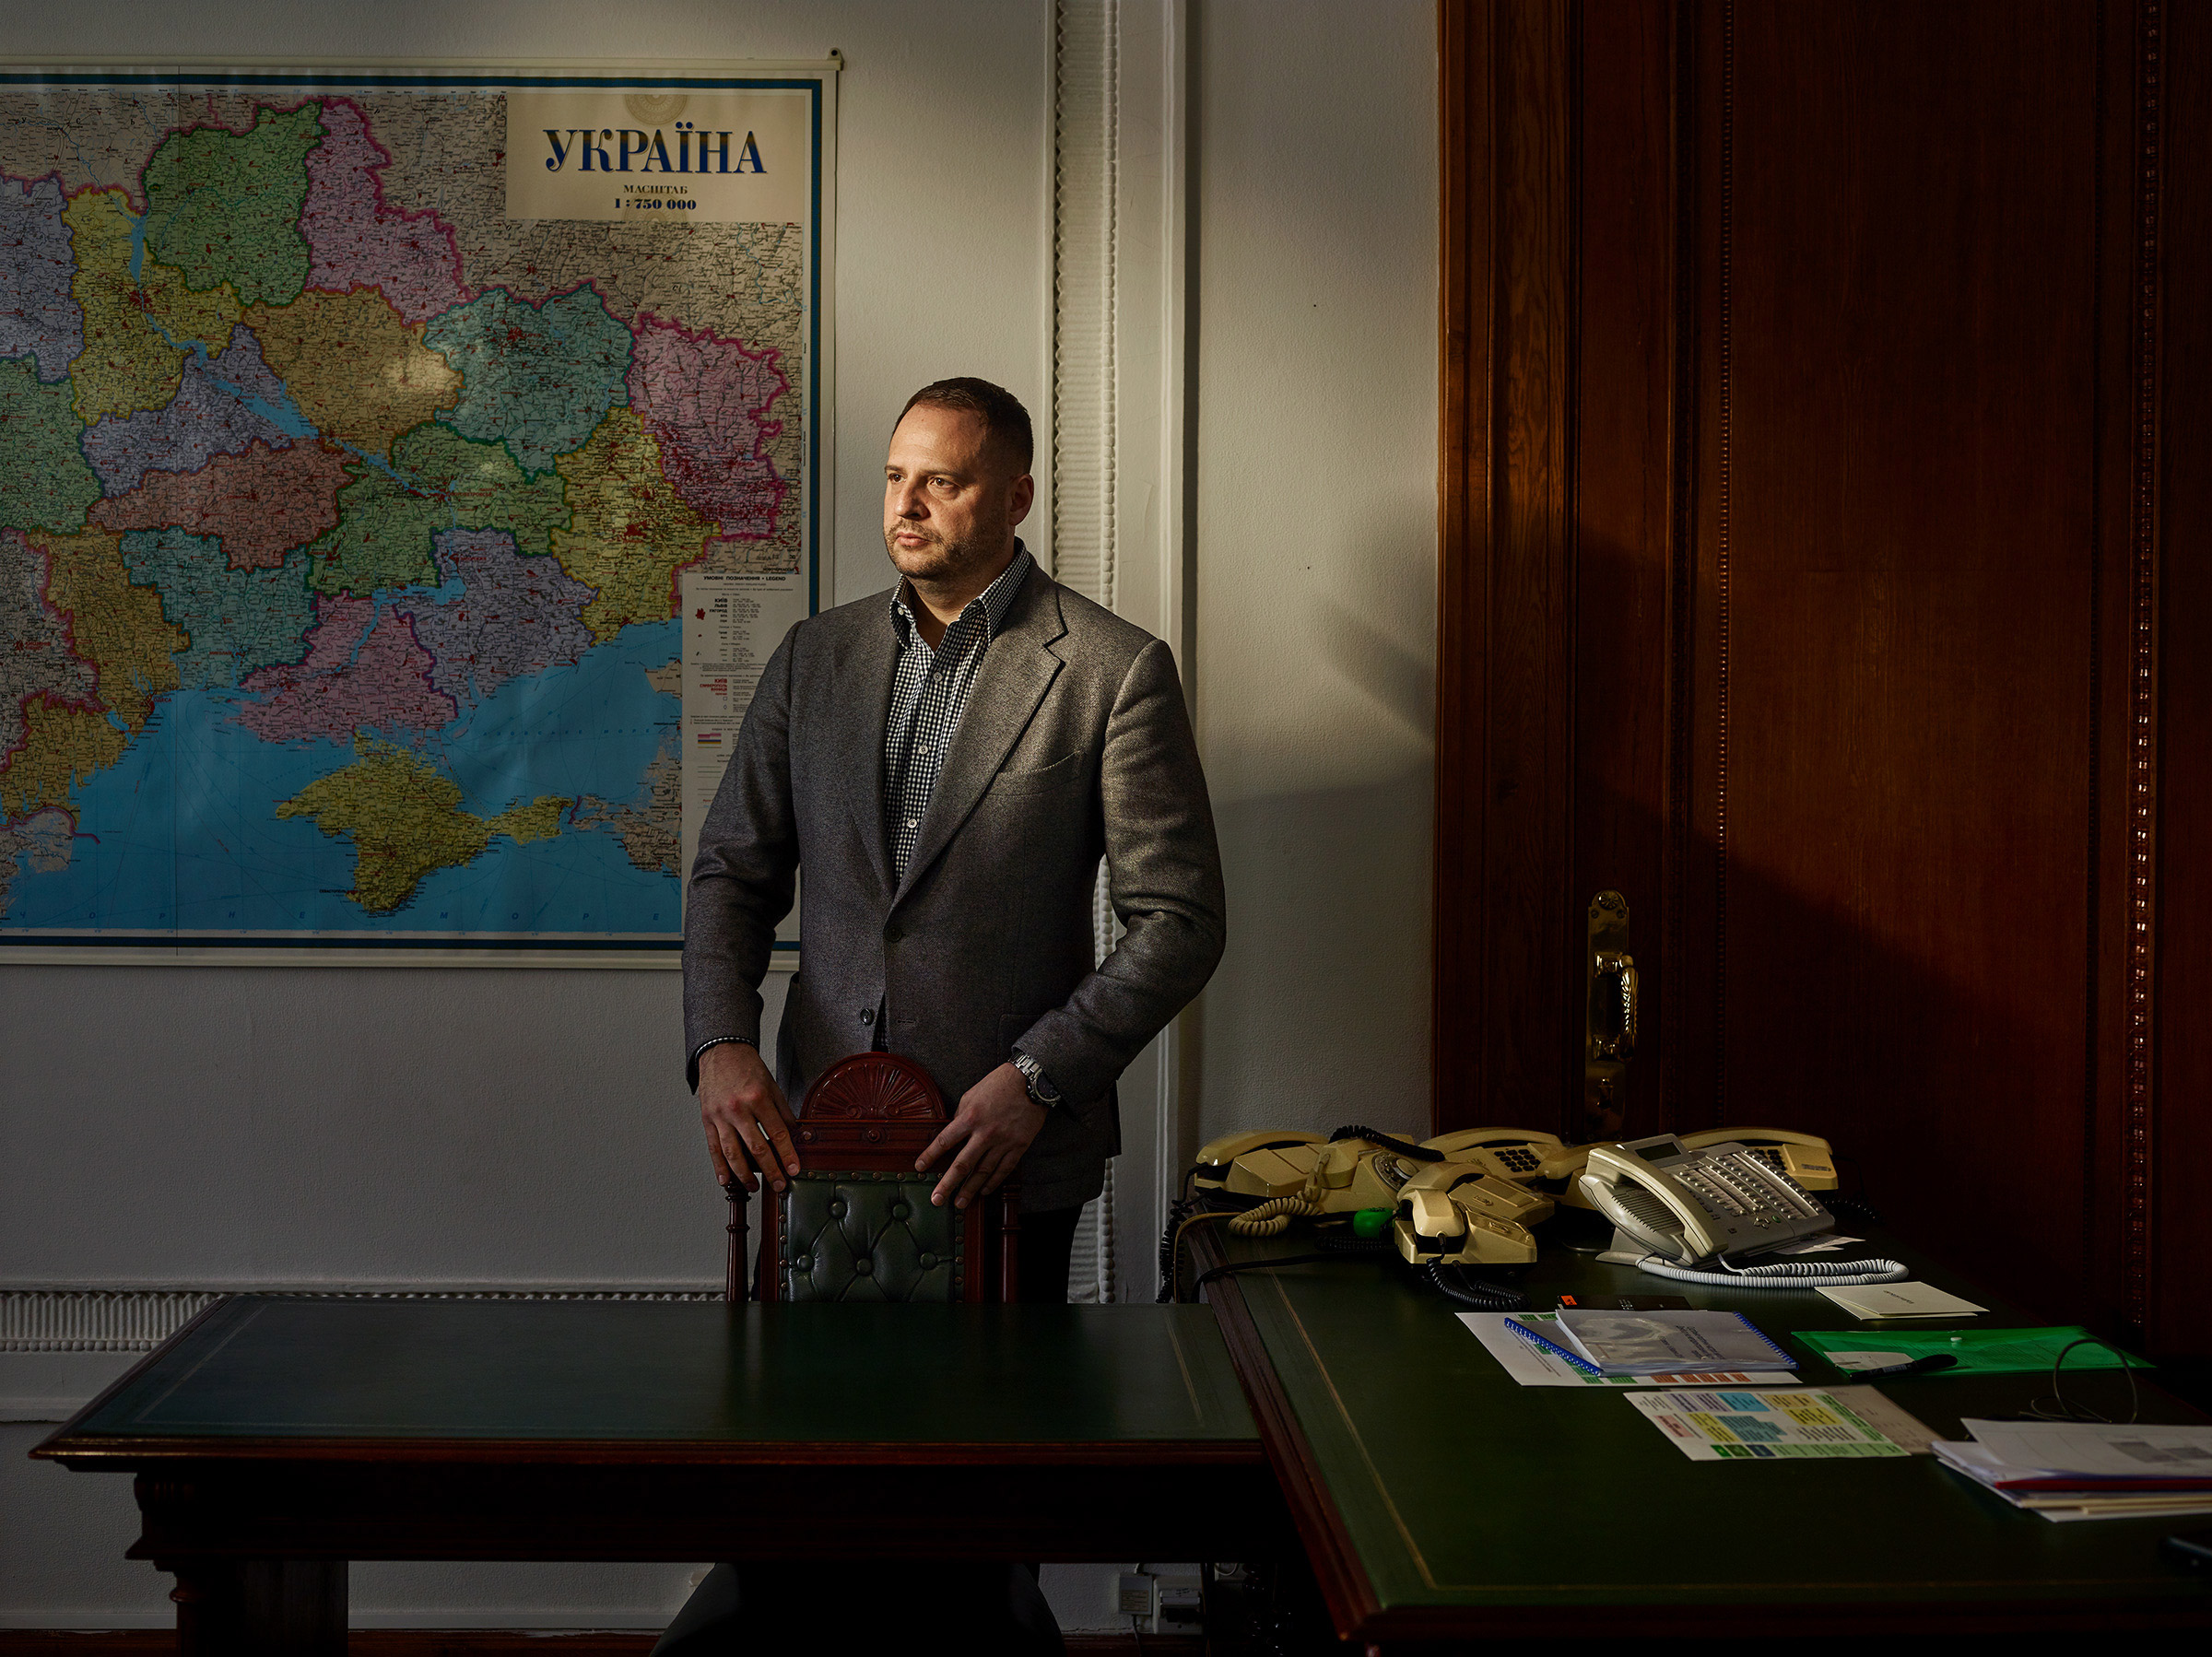 Kiev 4 December 2019 - portrait of Andriy Yermak, senior adviser to the President of Ukraine in the Office of the President of Ukraine (building).